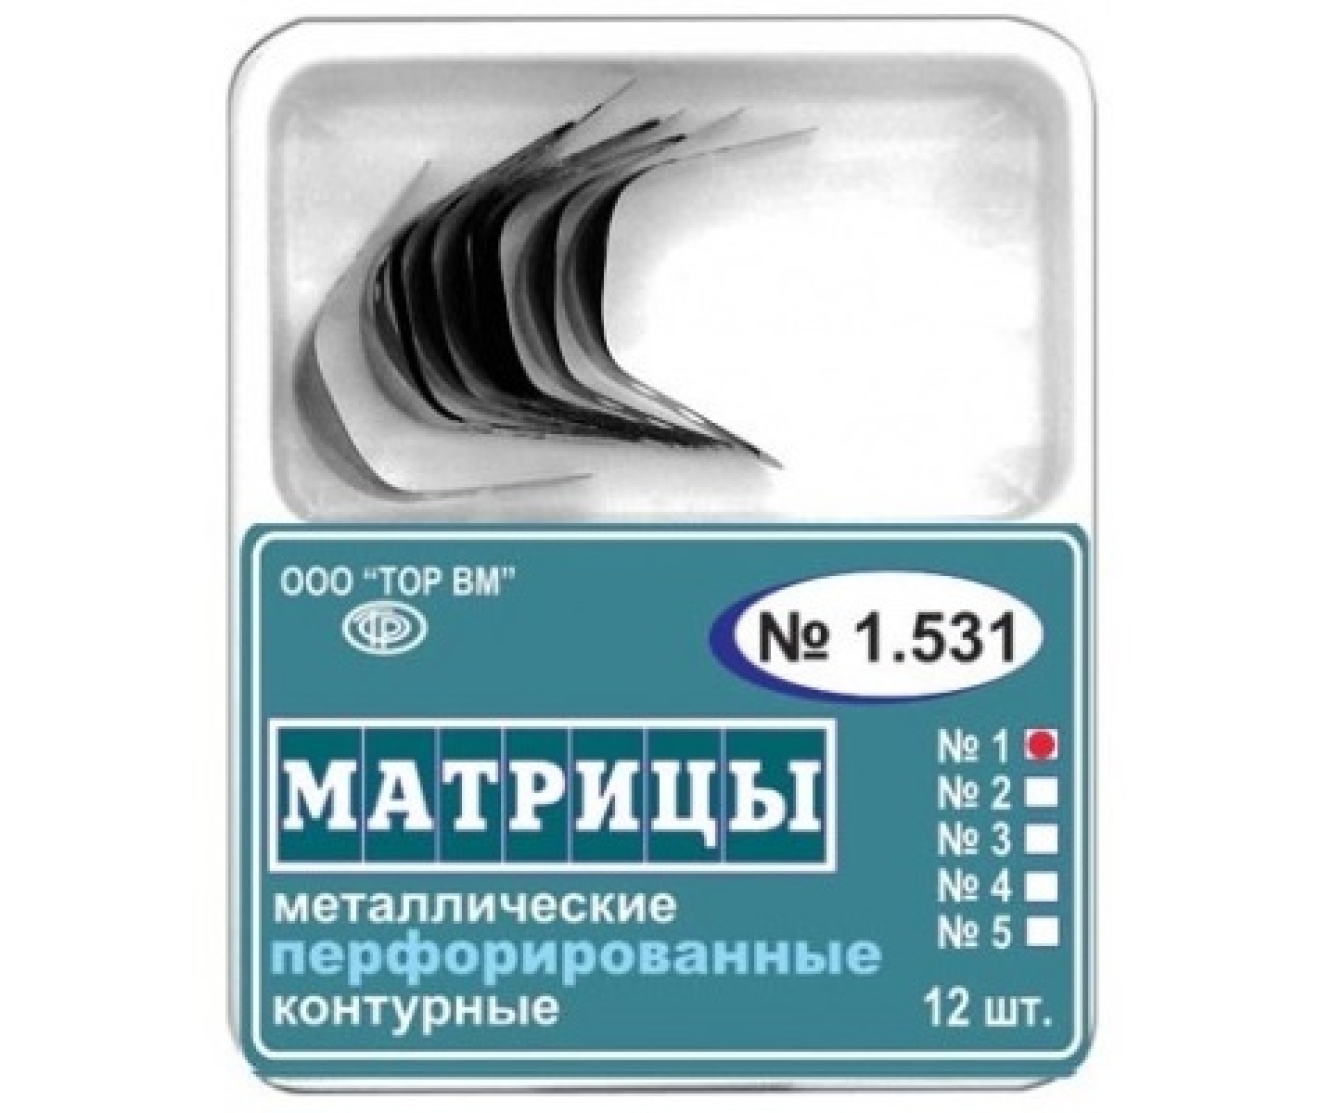 Матрицы металлические контурные, перфорированные, малые с выступом, 1.531(1), ТОР ВМ (Россия)